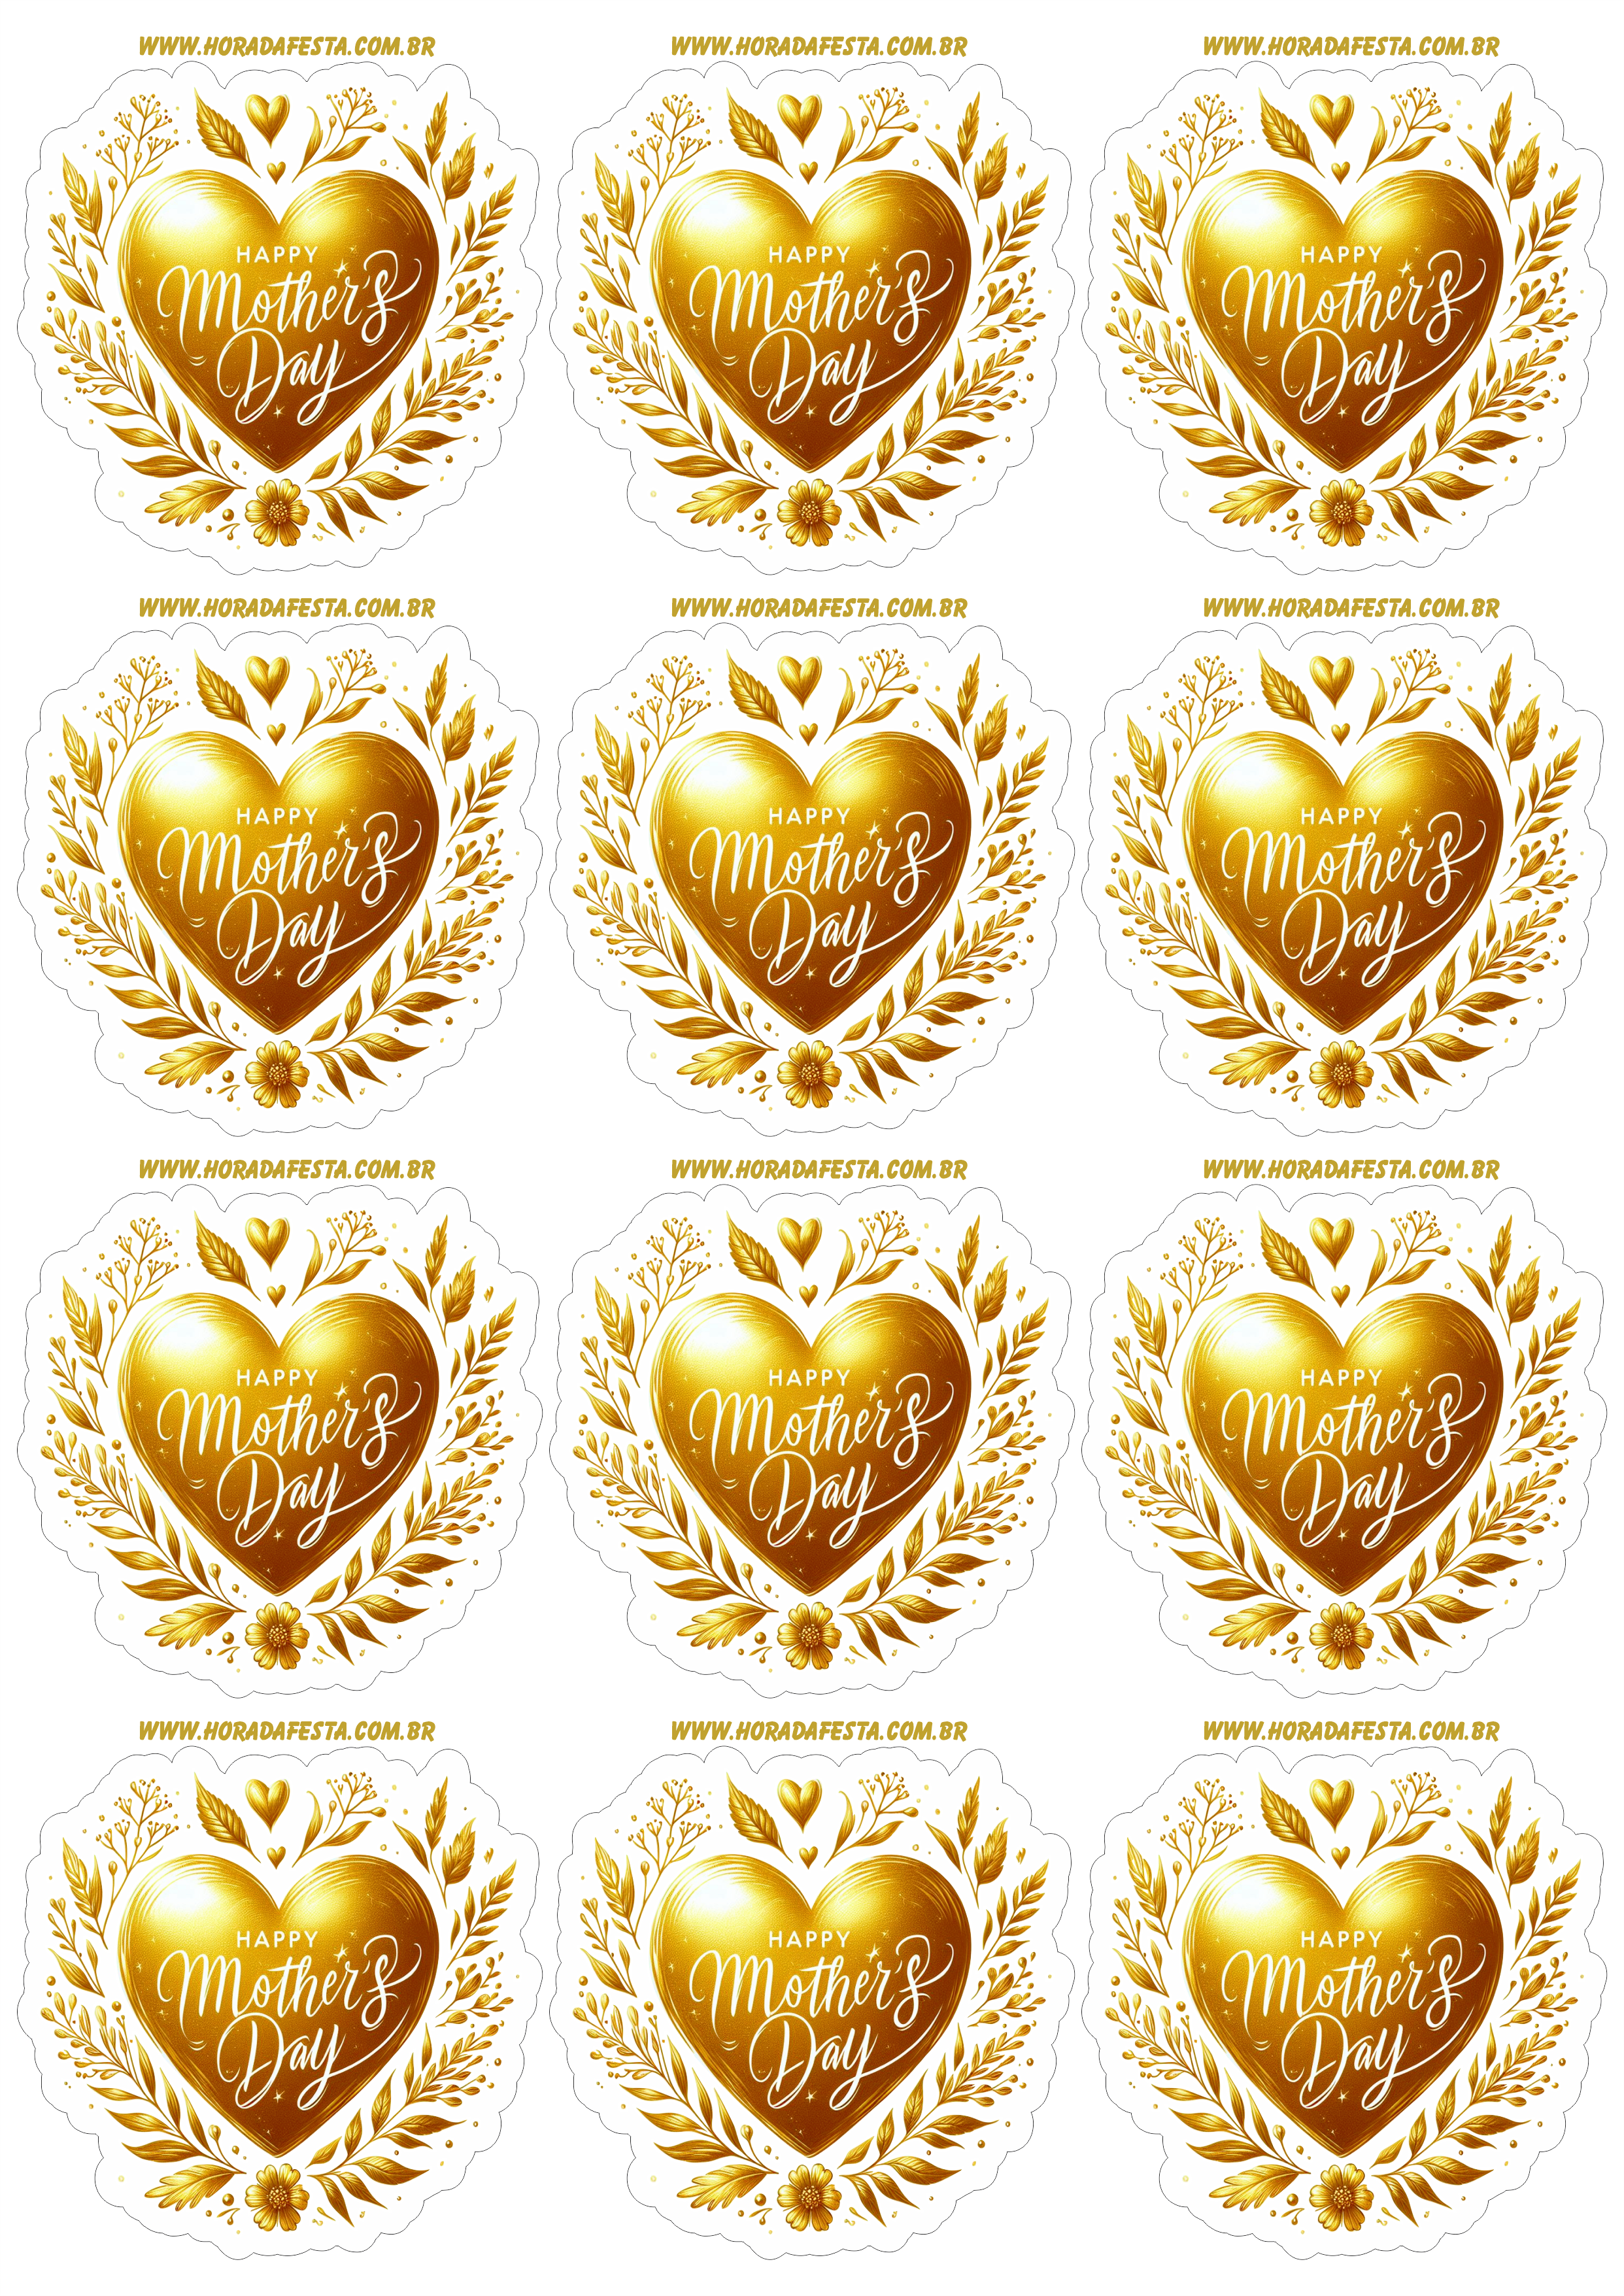 Dia das mães adesivo de coração dourado para decoração happy mother’s day artes gráficas 12 imagens png